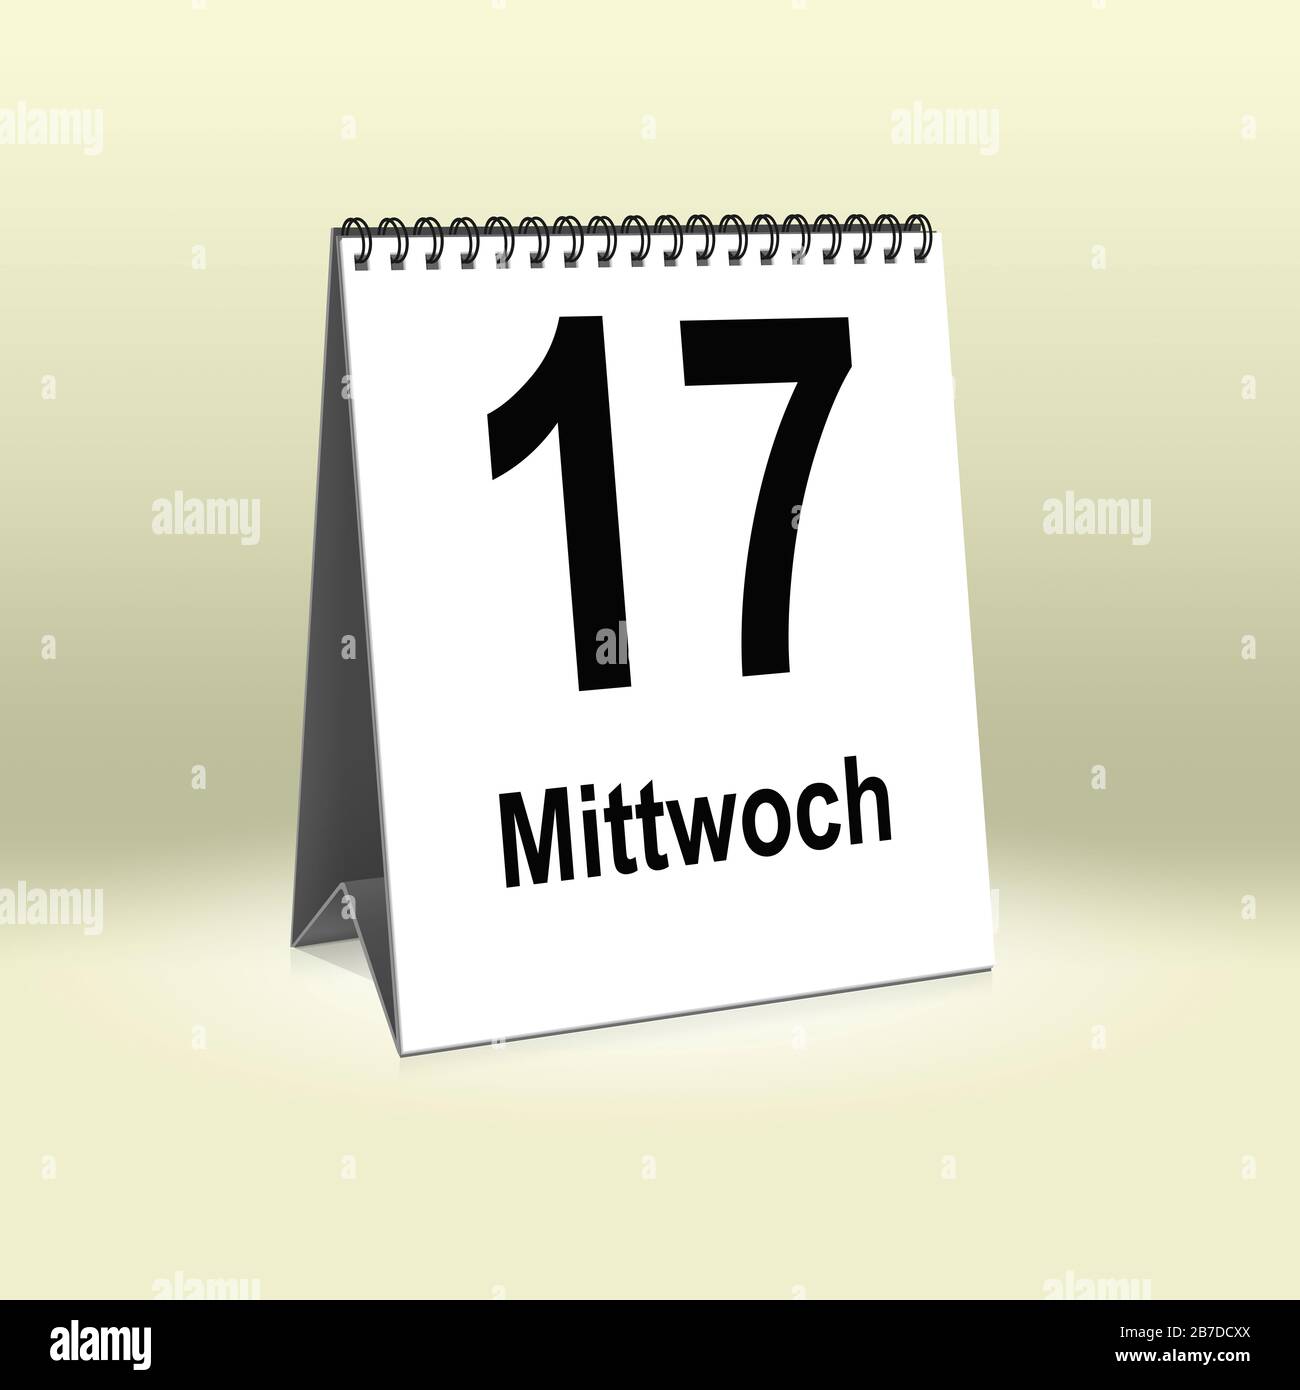 A calendar in German language shows Wednesday 17th | Ein Kalender für den Schreibtisch zeigt Mittwoch 17. Stock Photo